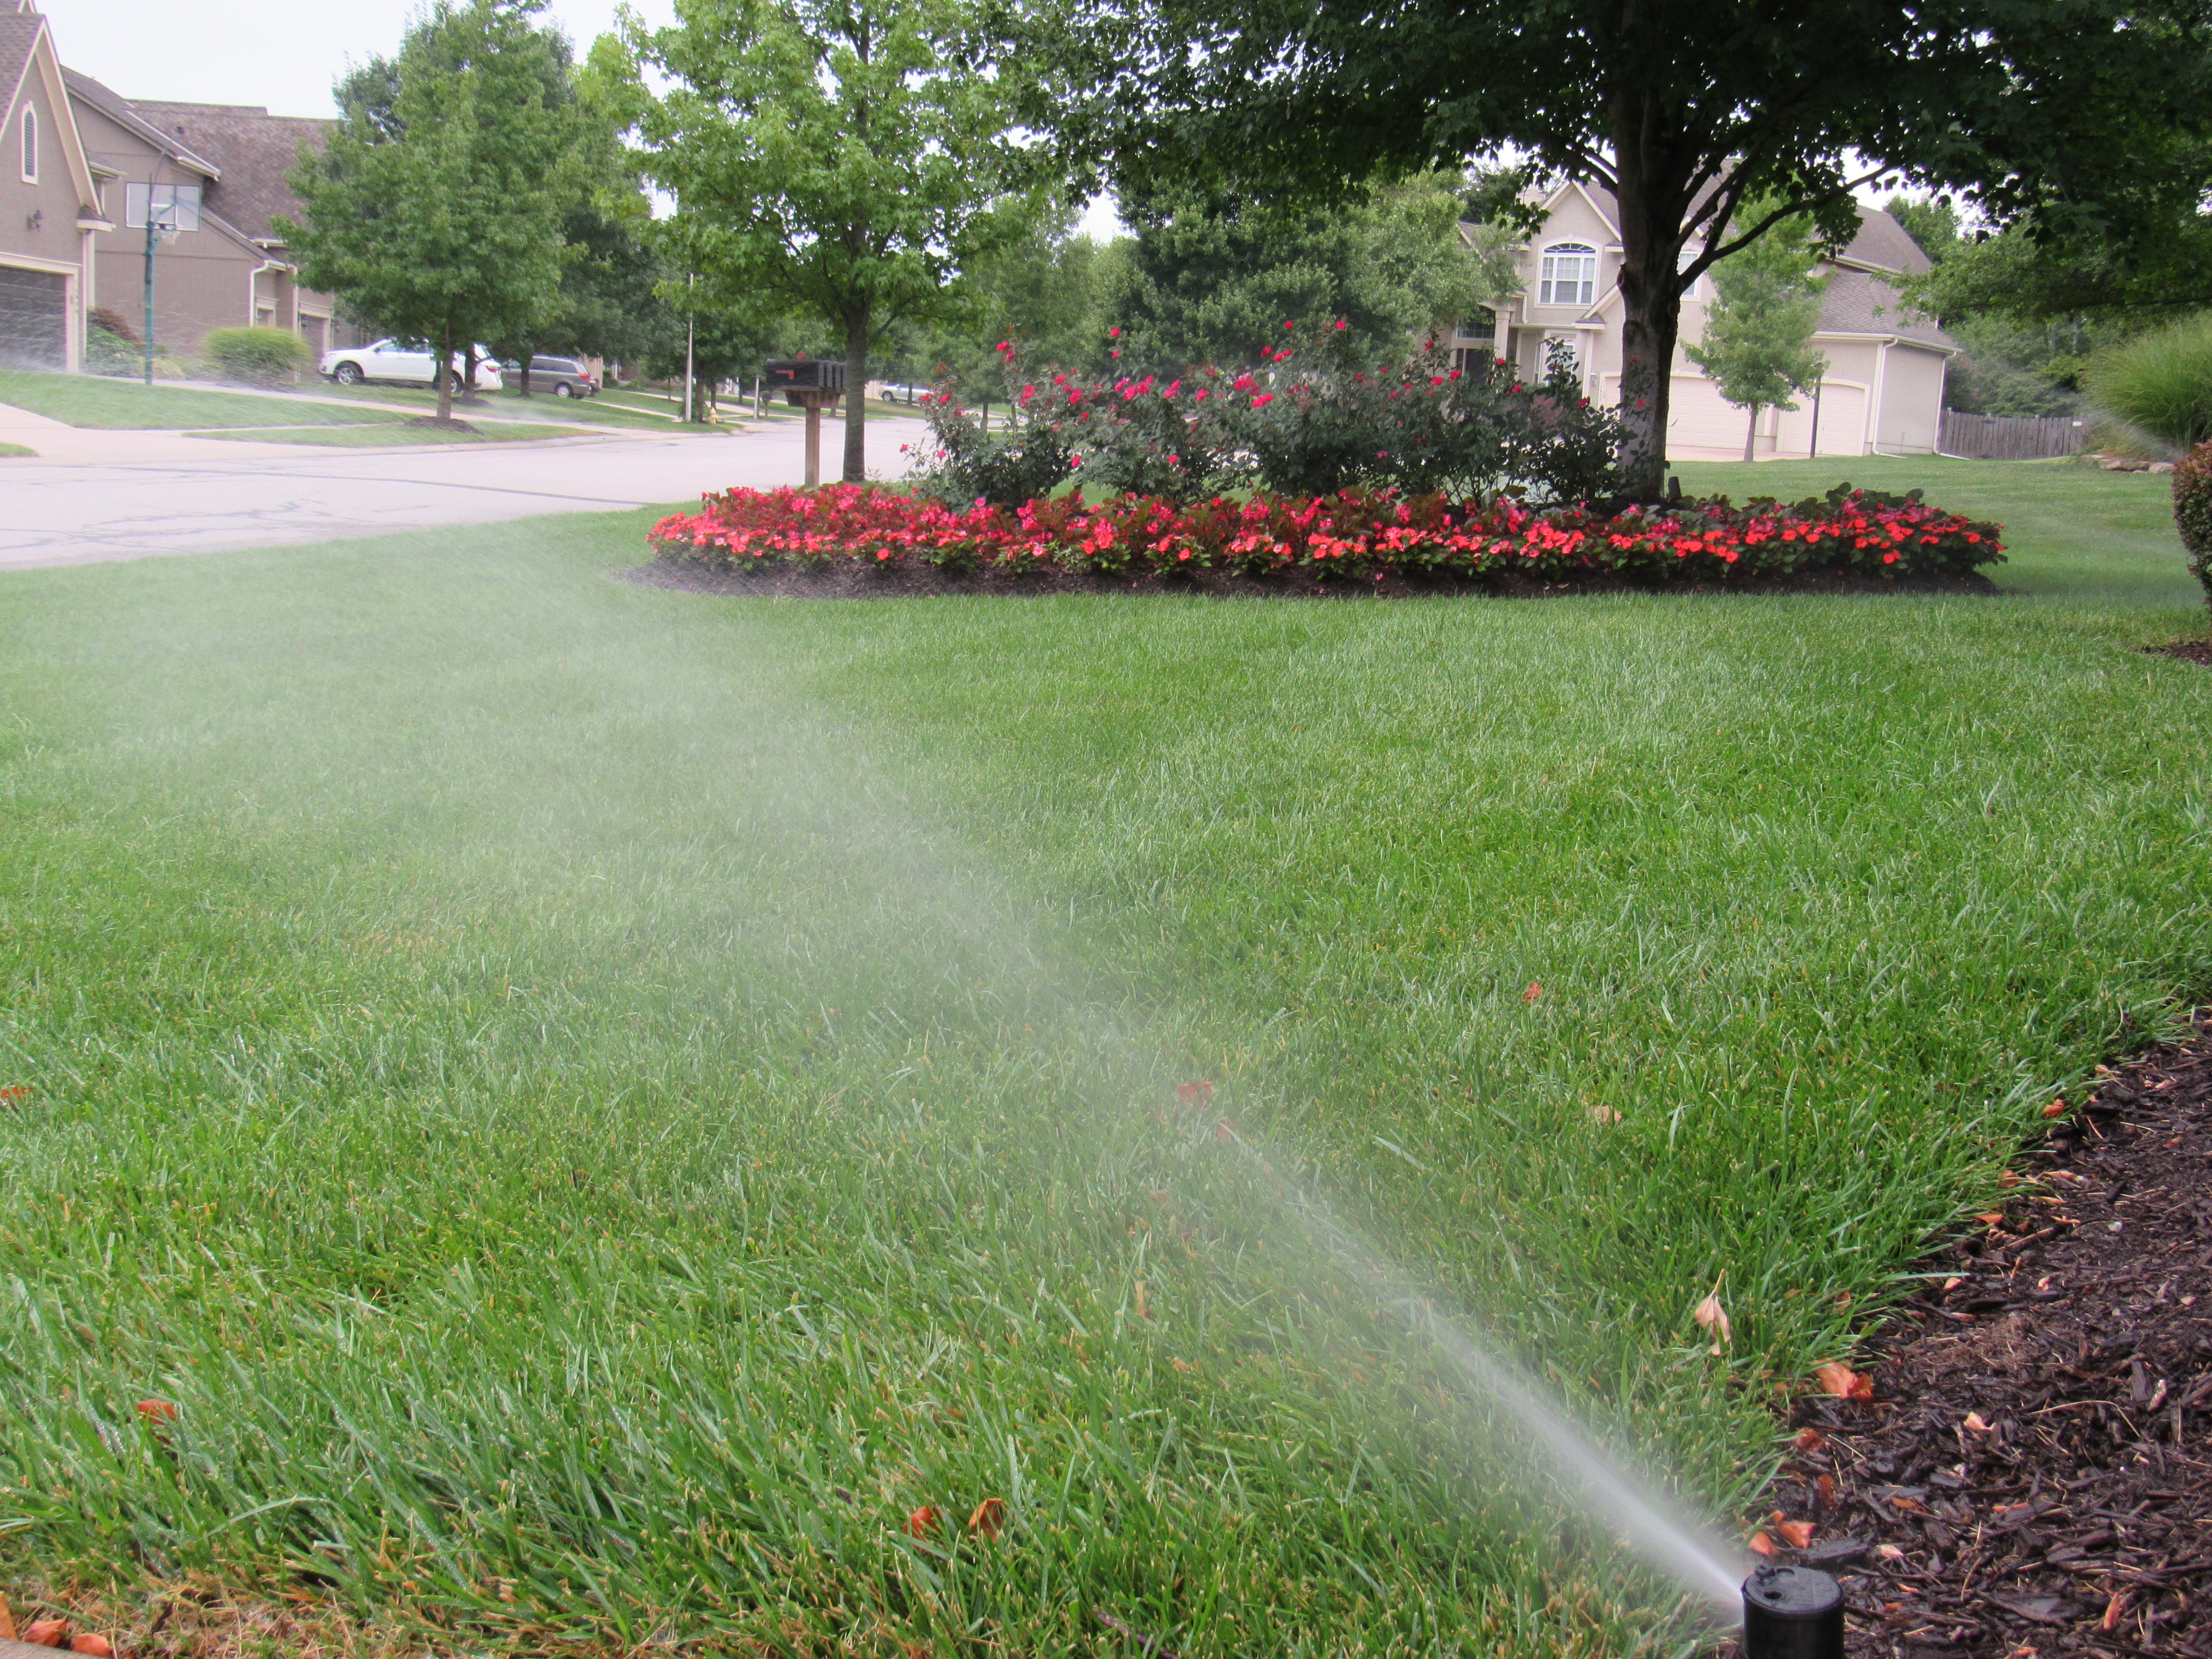  sprinkler system service or irrigation system service